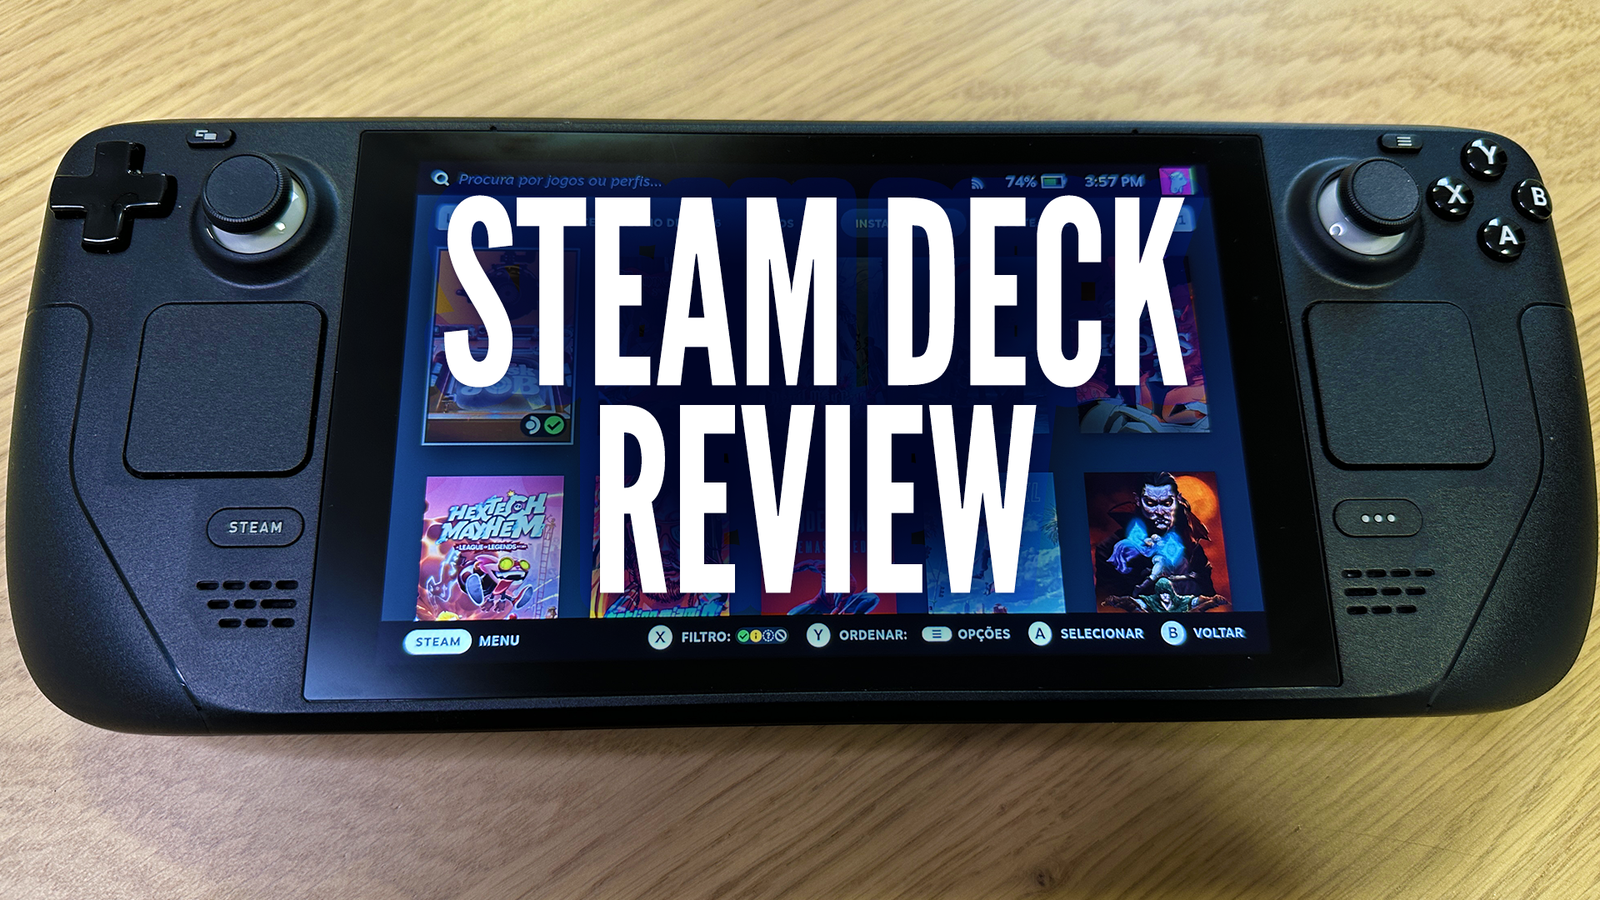 Imprensa internacional divulga primeiras reviews do Steam Deck